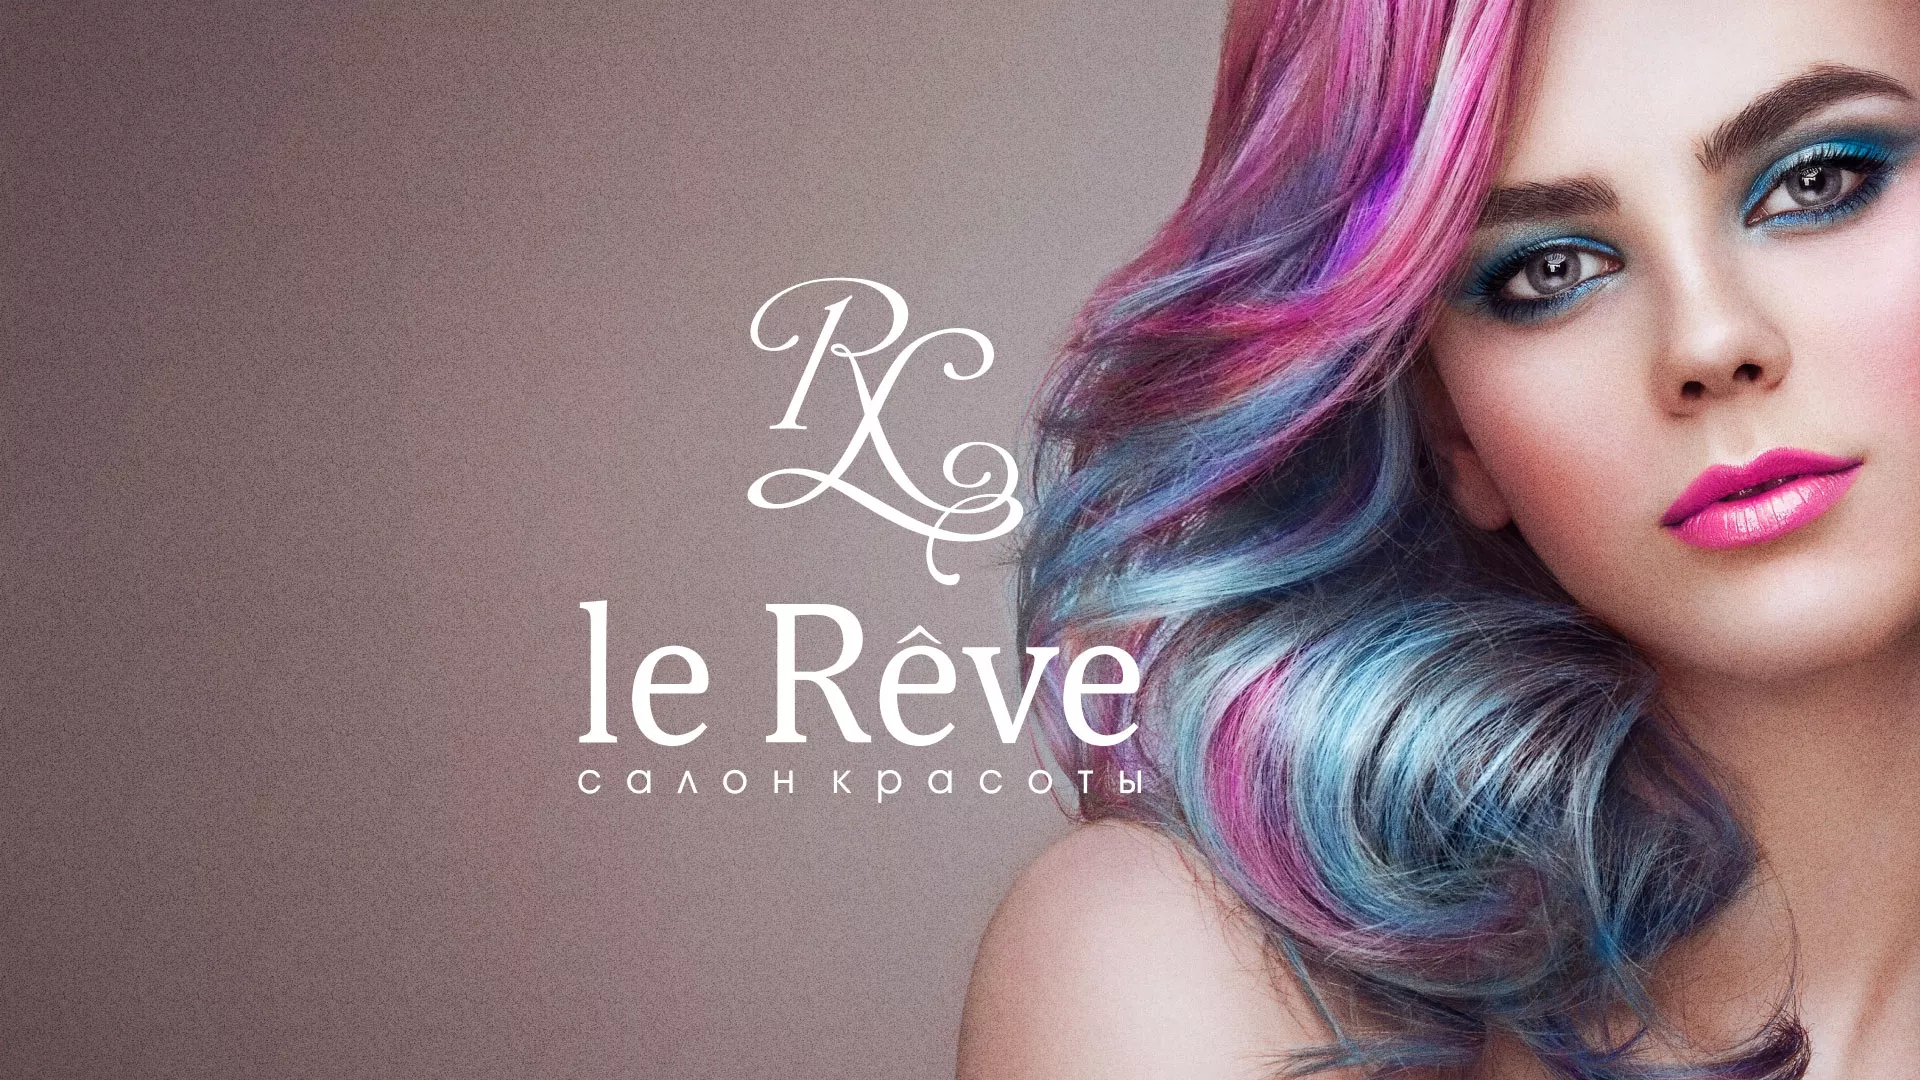 Создание сайта для салона красоты «Le Reve» в Вязниках